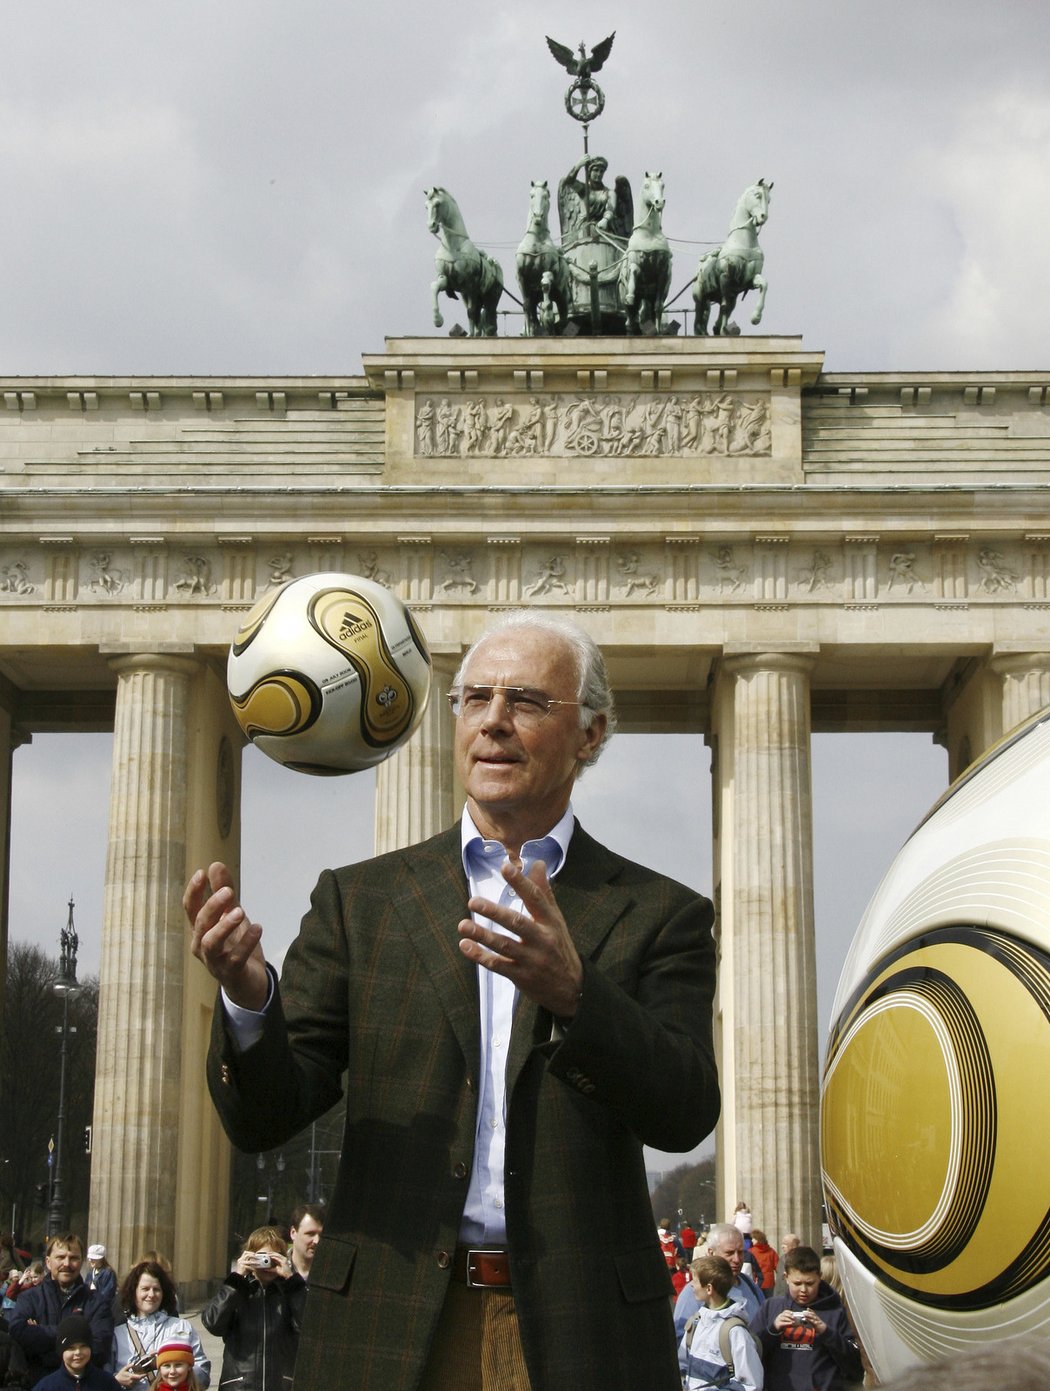 Legendární fotbalista Franz Beckenbauer